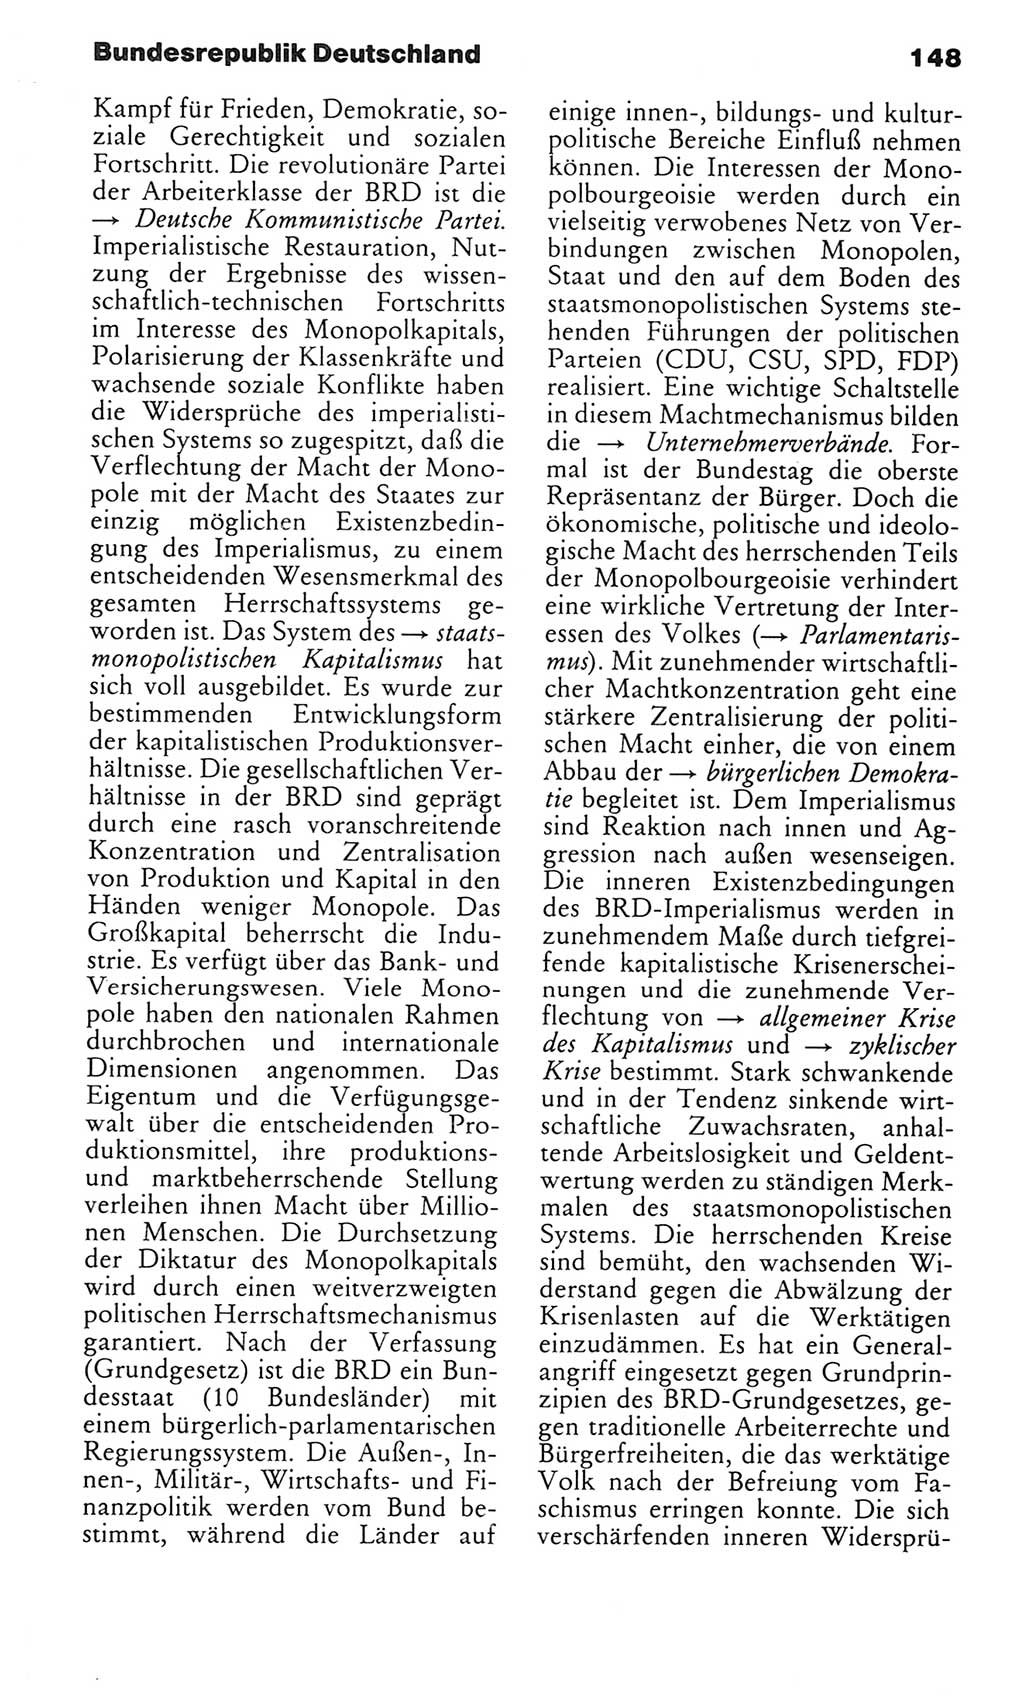 Kleines politisches Wörterbuch [Deutsche Demokratische Republik (DDR)] 1983, Seite 148 (Kl. pol. Wb. DDR 1983, S. 148)